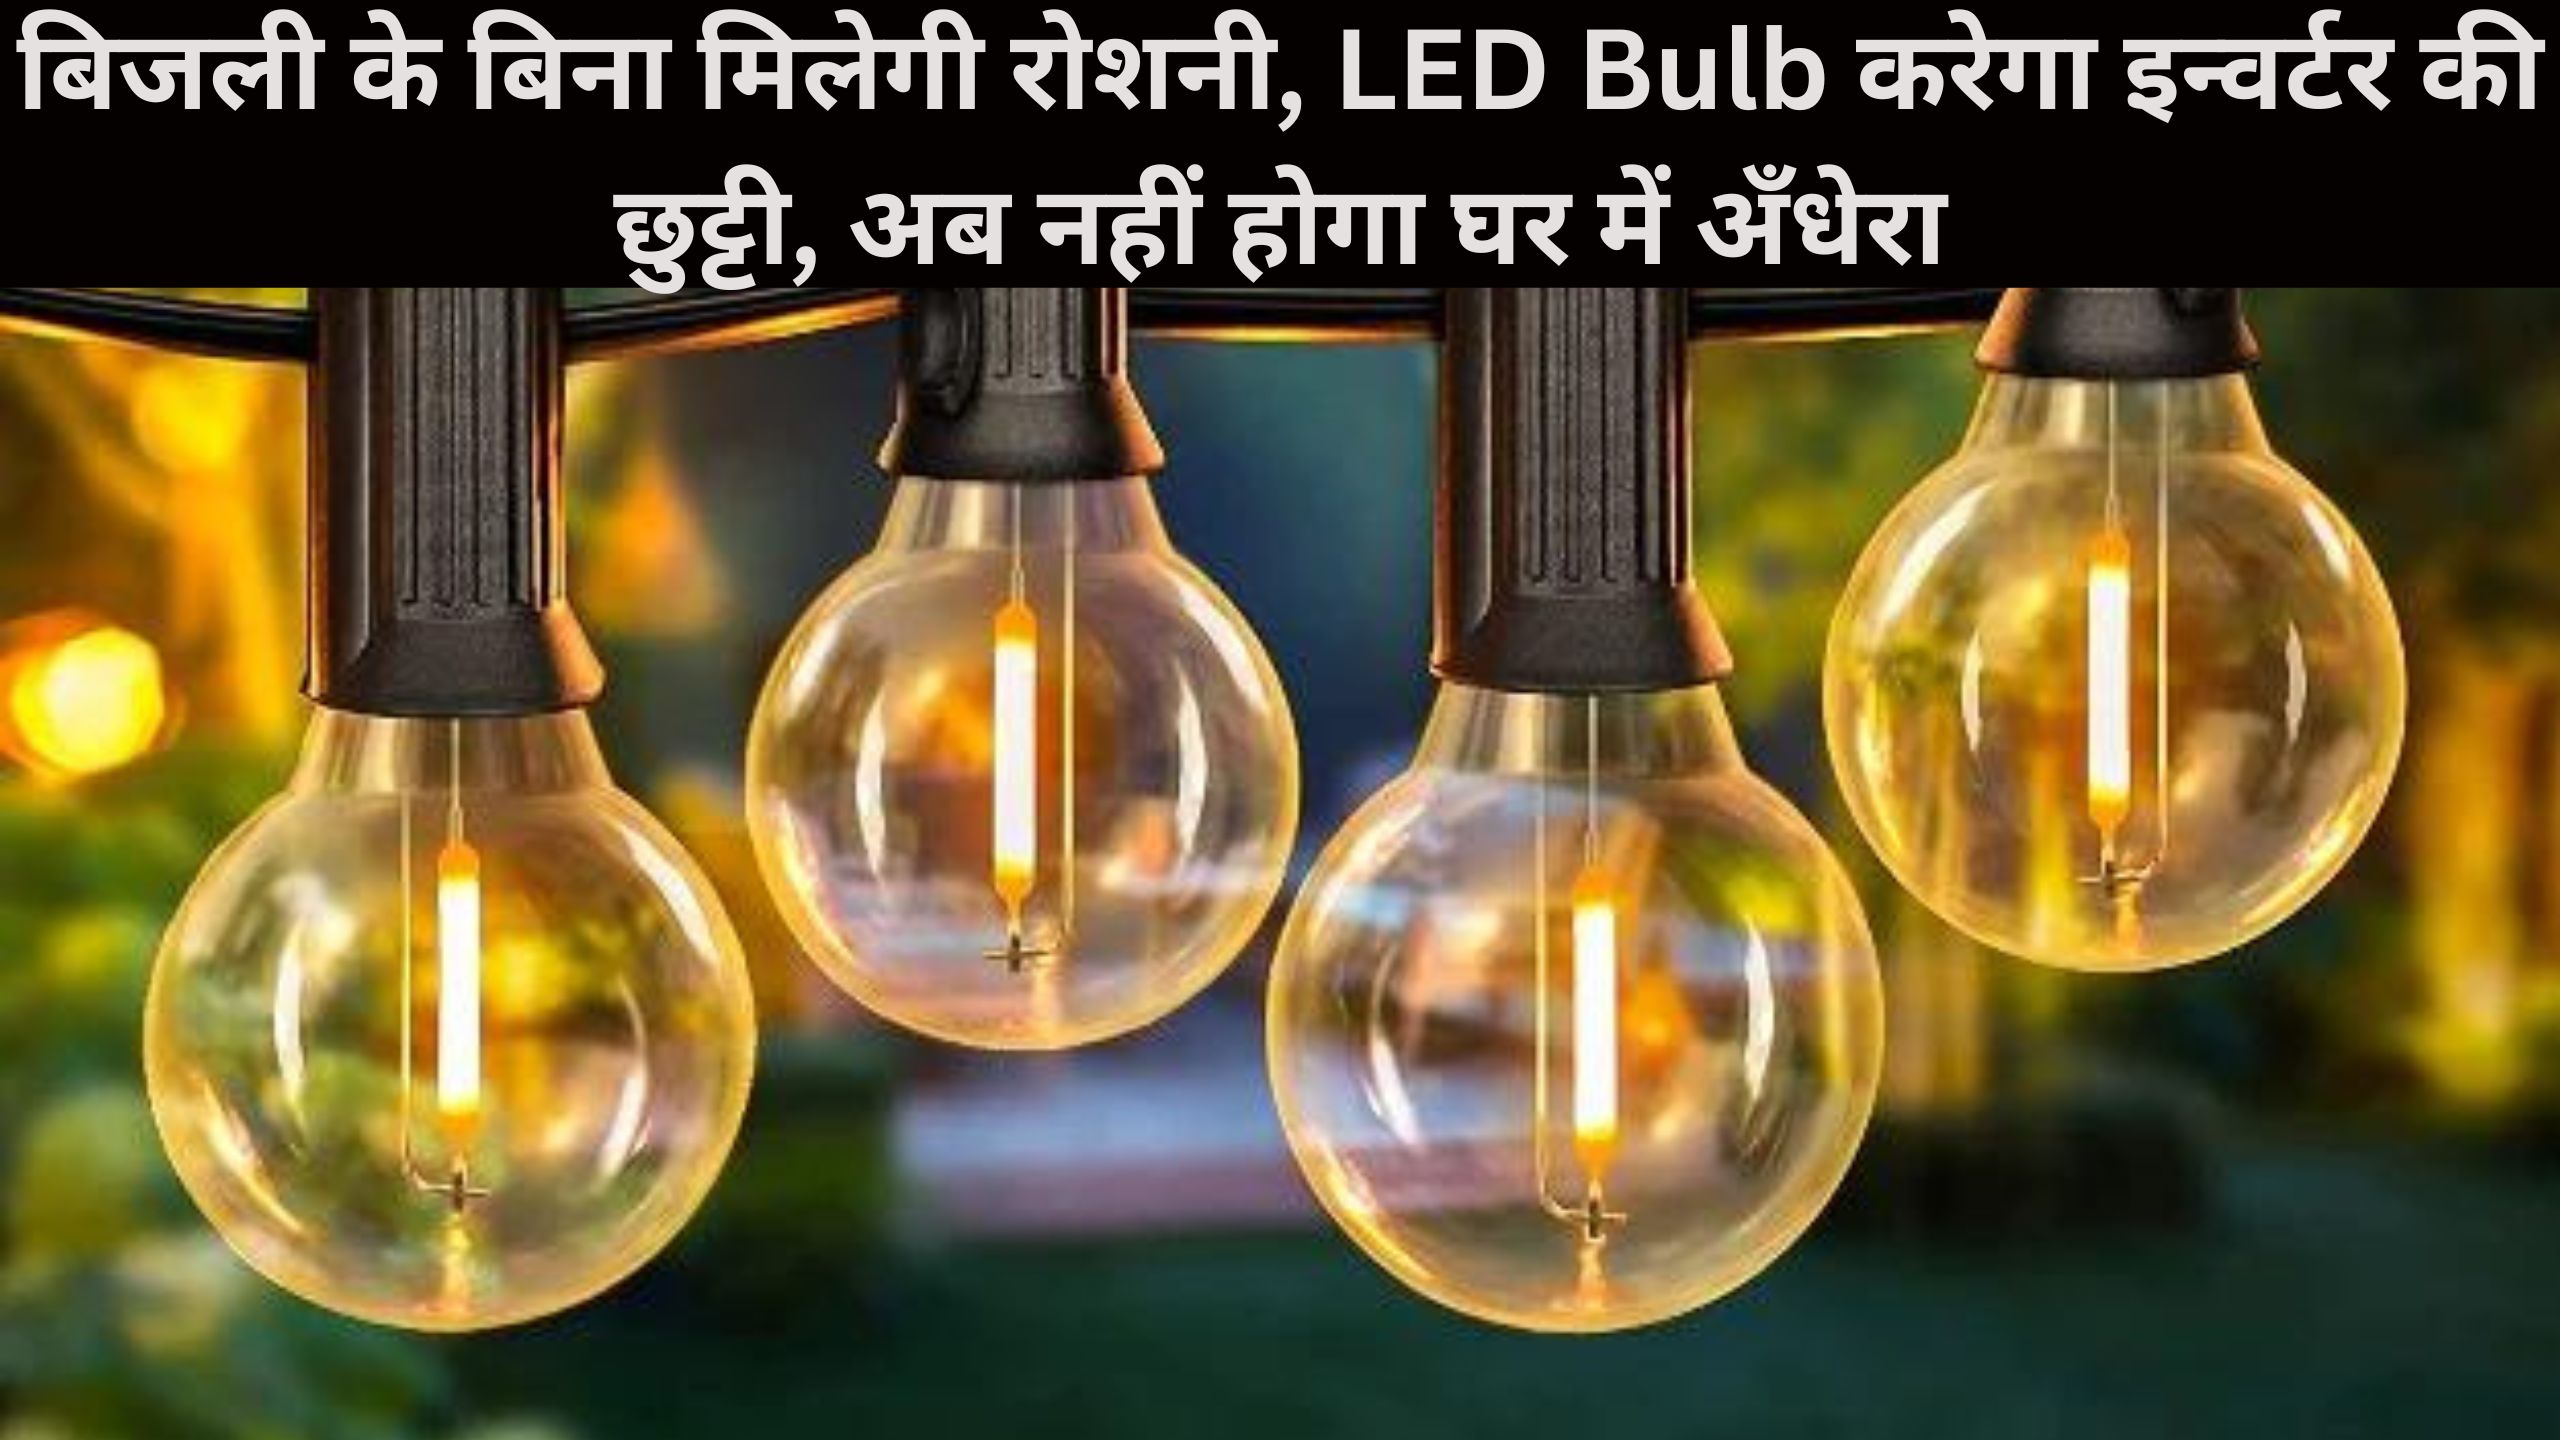 बिजली के बिना मिलेगी रोशनी, LED Bulb करेगा इन्वर्टर की छुट्टी, अब नहीं होगा घर में अँधेरा